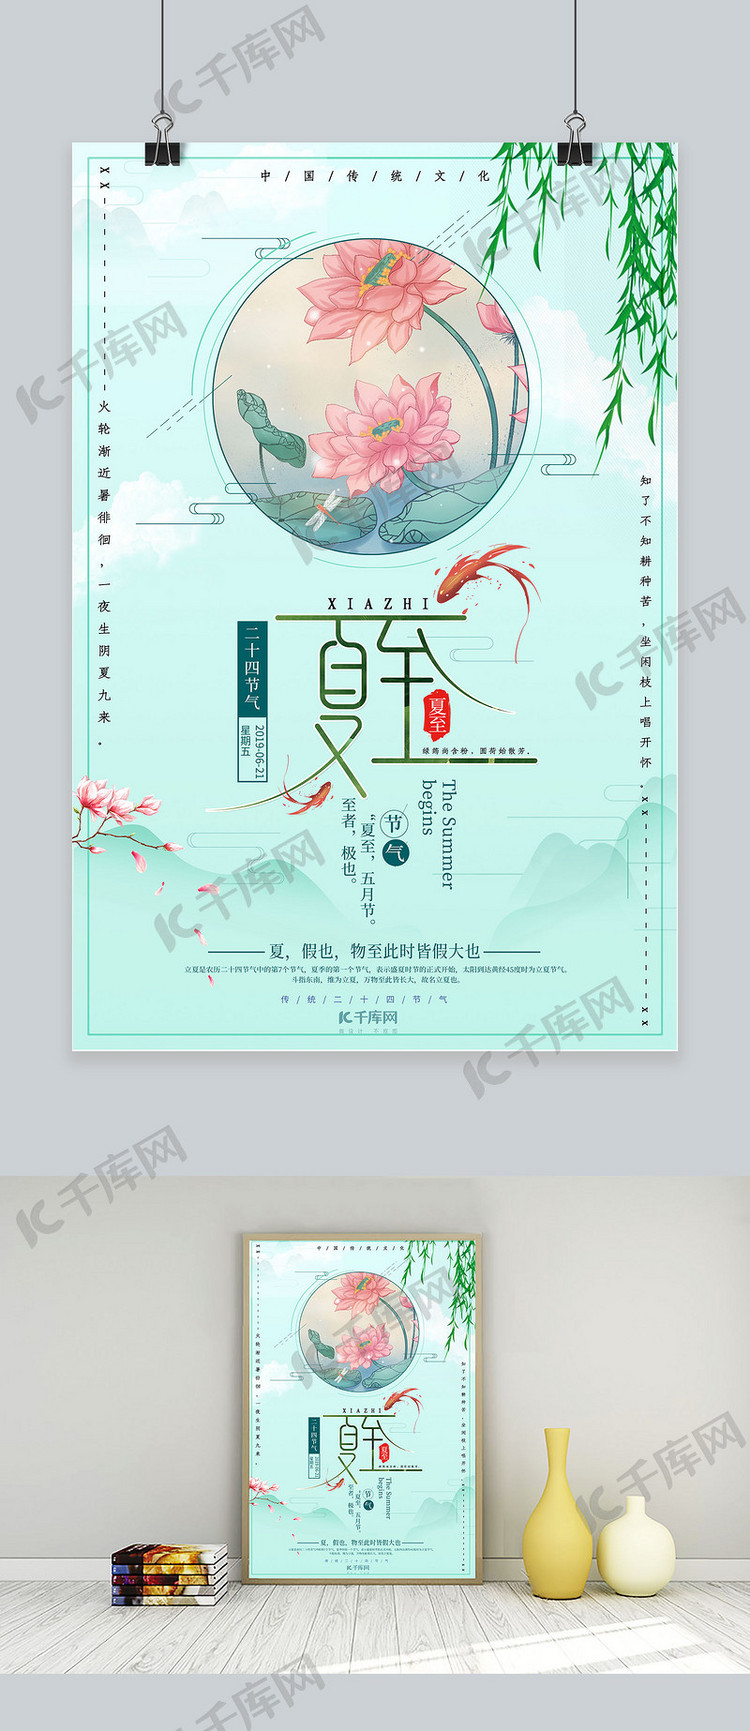 中国传统节气之夏至节气海报